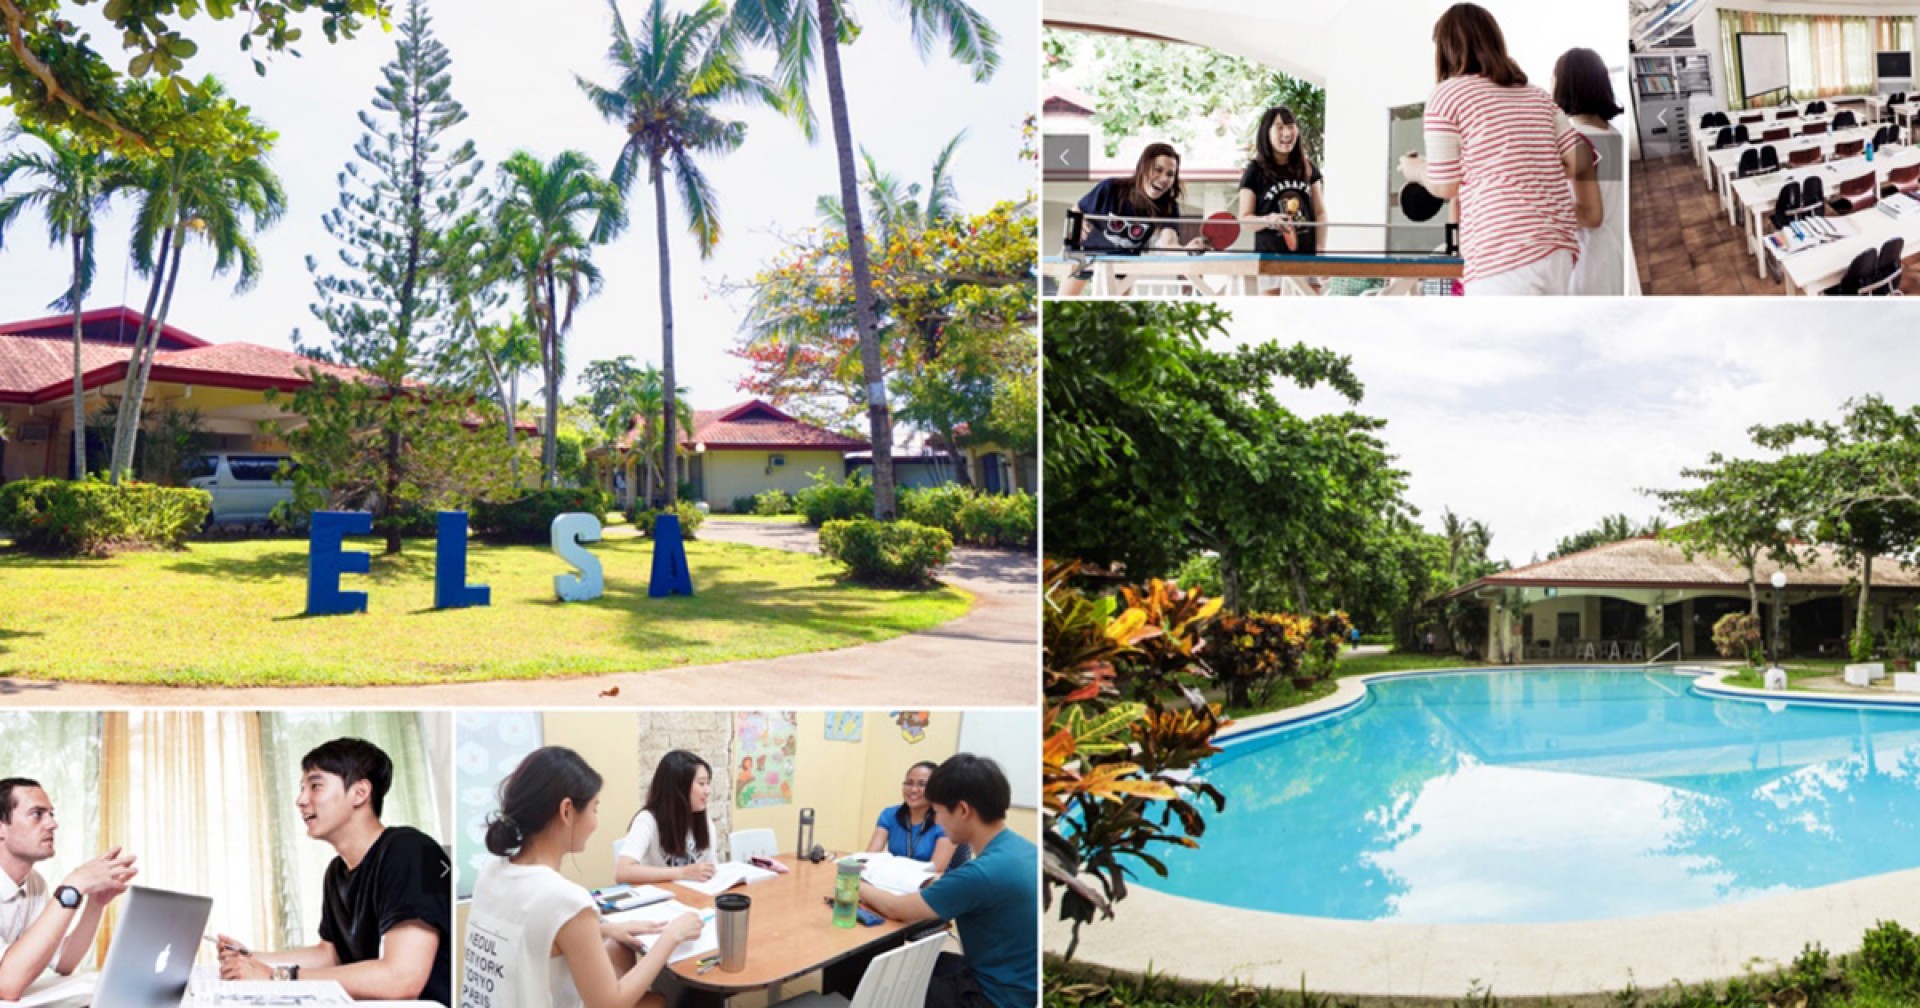 Du học Philippines – tận hưởng môi trường học tập như nghỉ dưỡng tại trường Anh ngữ ELSA